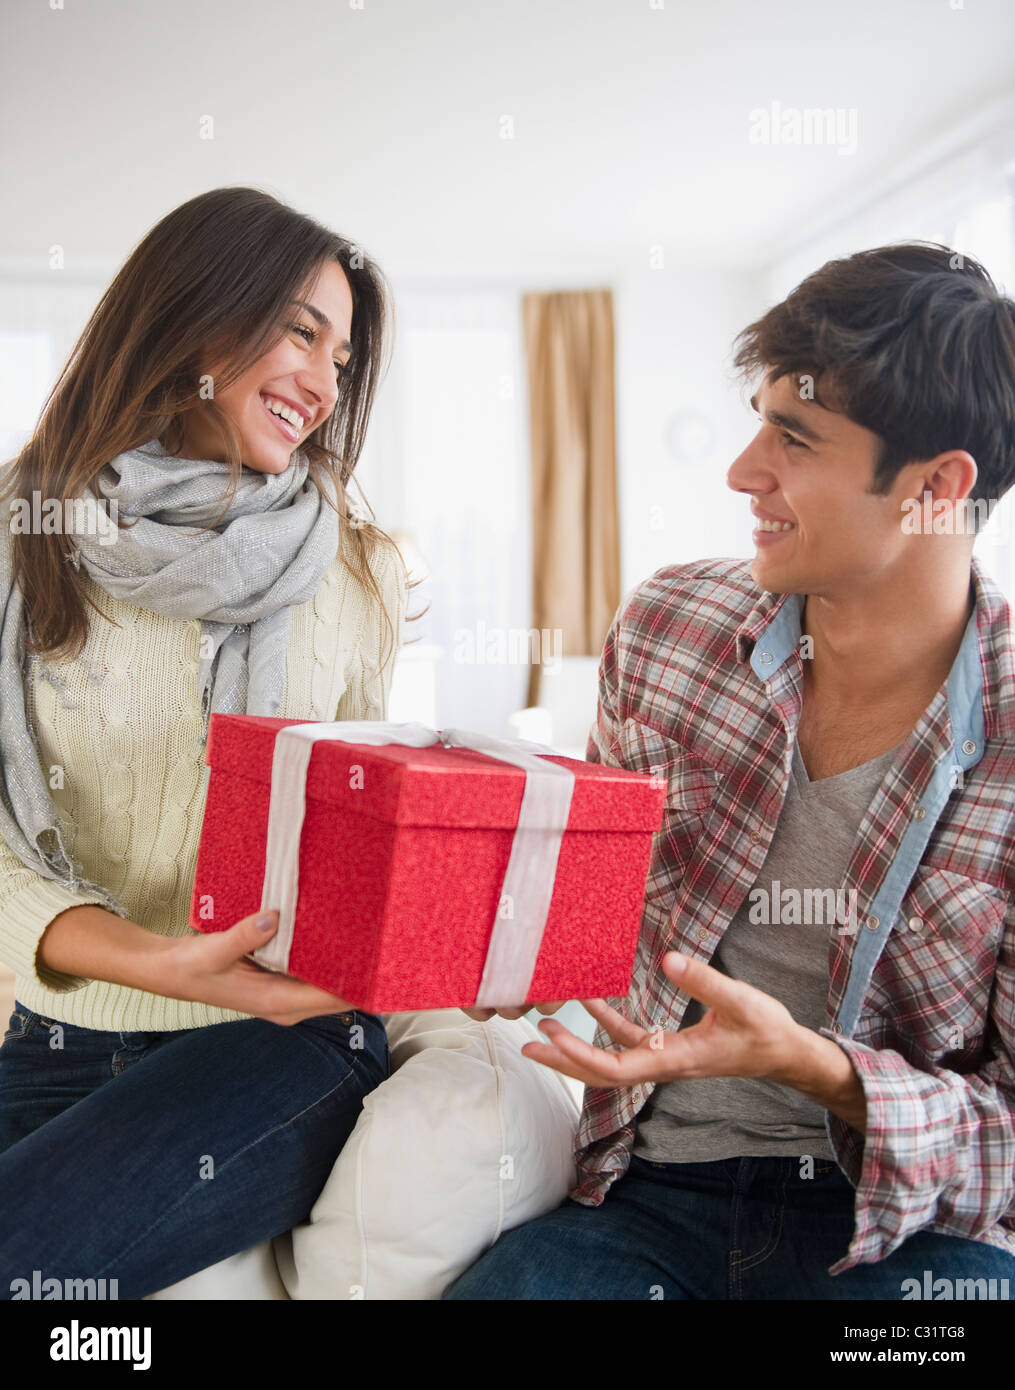 Woman handing mari cadeau de Noël Banque D'Images